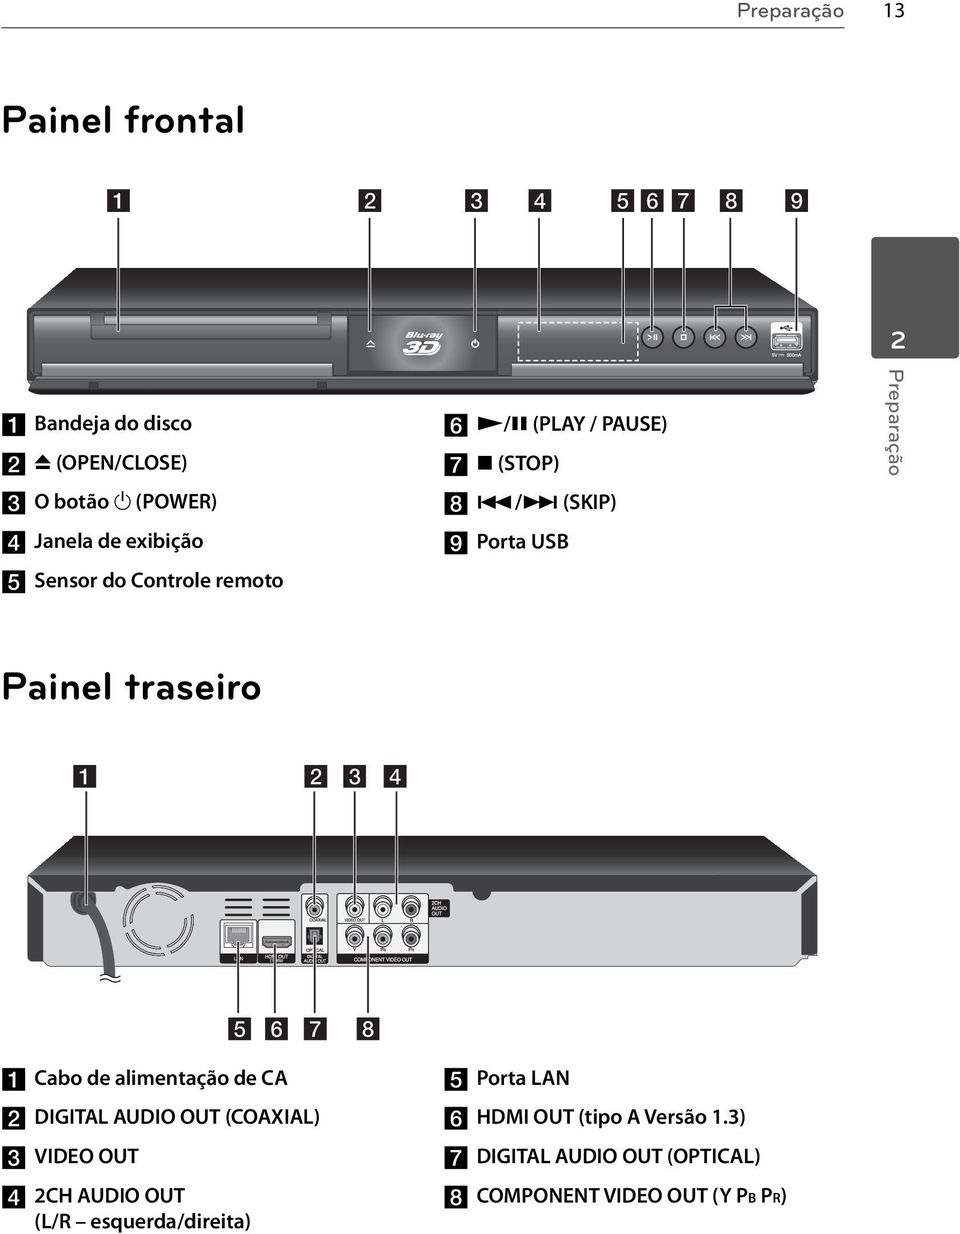 /> (SKIP) i Porta USB Preparação Painel traseiro a Cabo de alimentação de CA b DIGITAL AUDIO OUT (COAXIAL)